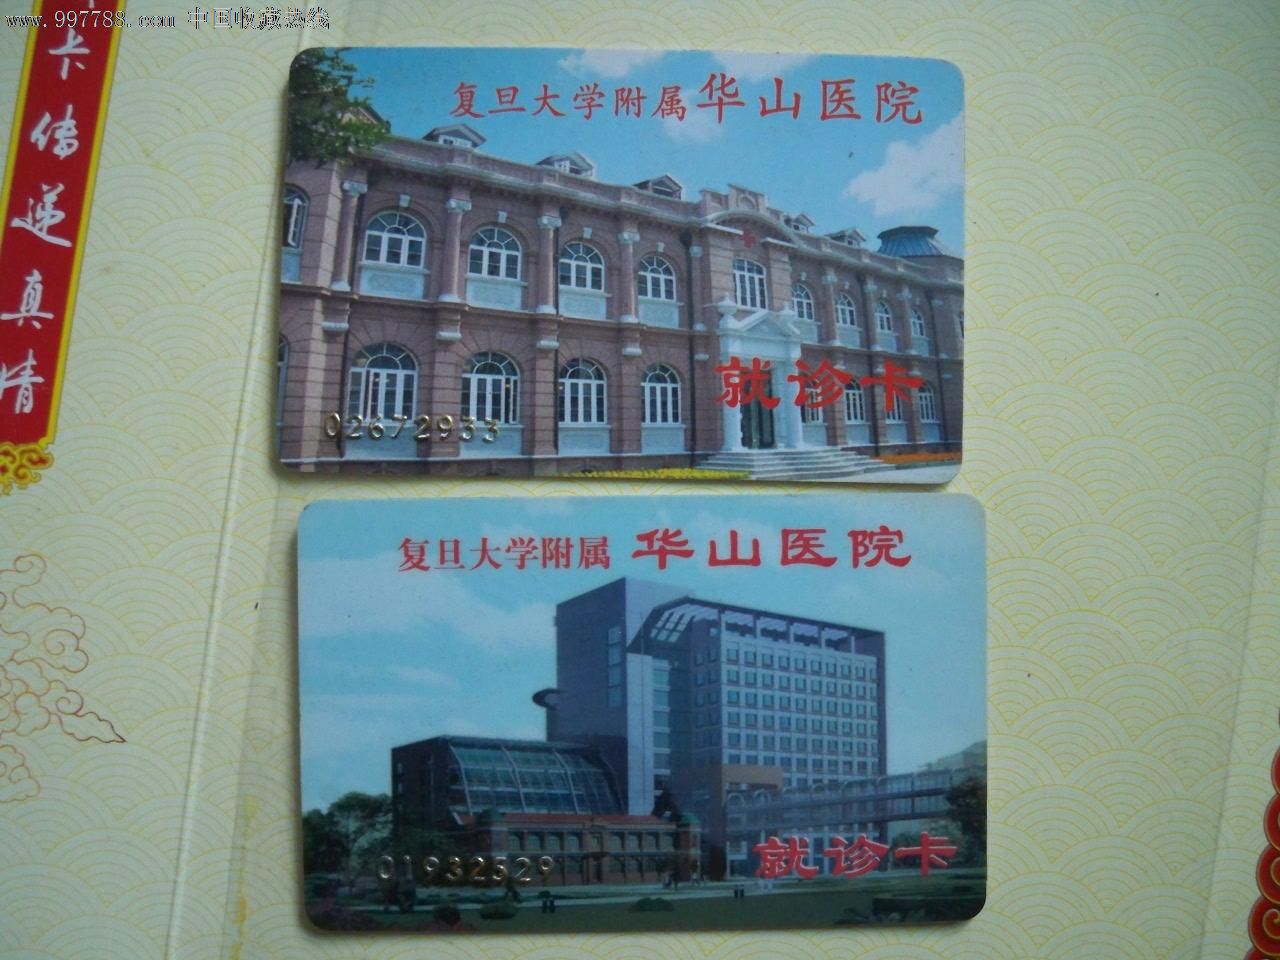 上海复旦大学附属华山医院就诊卡2枚不同,医疗